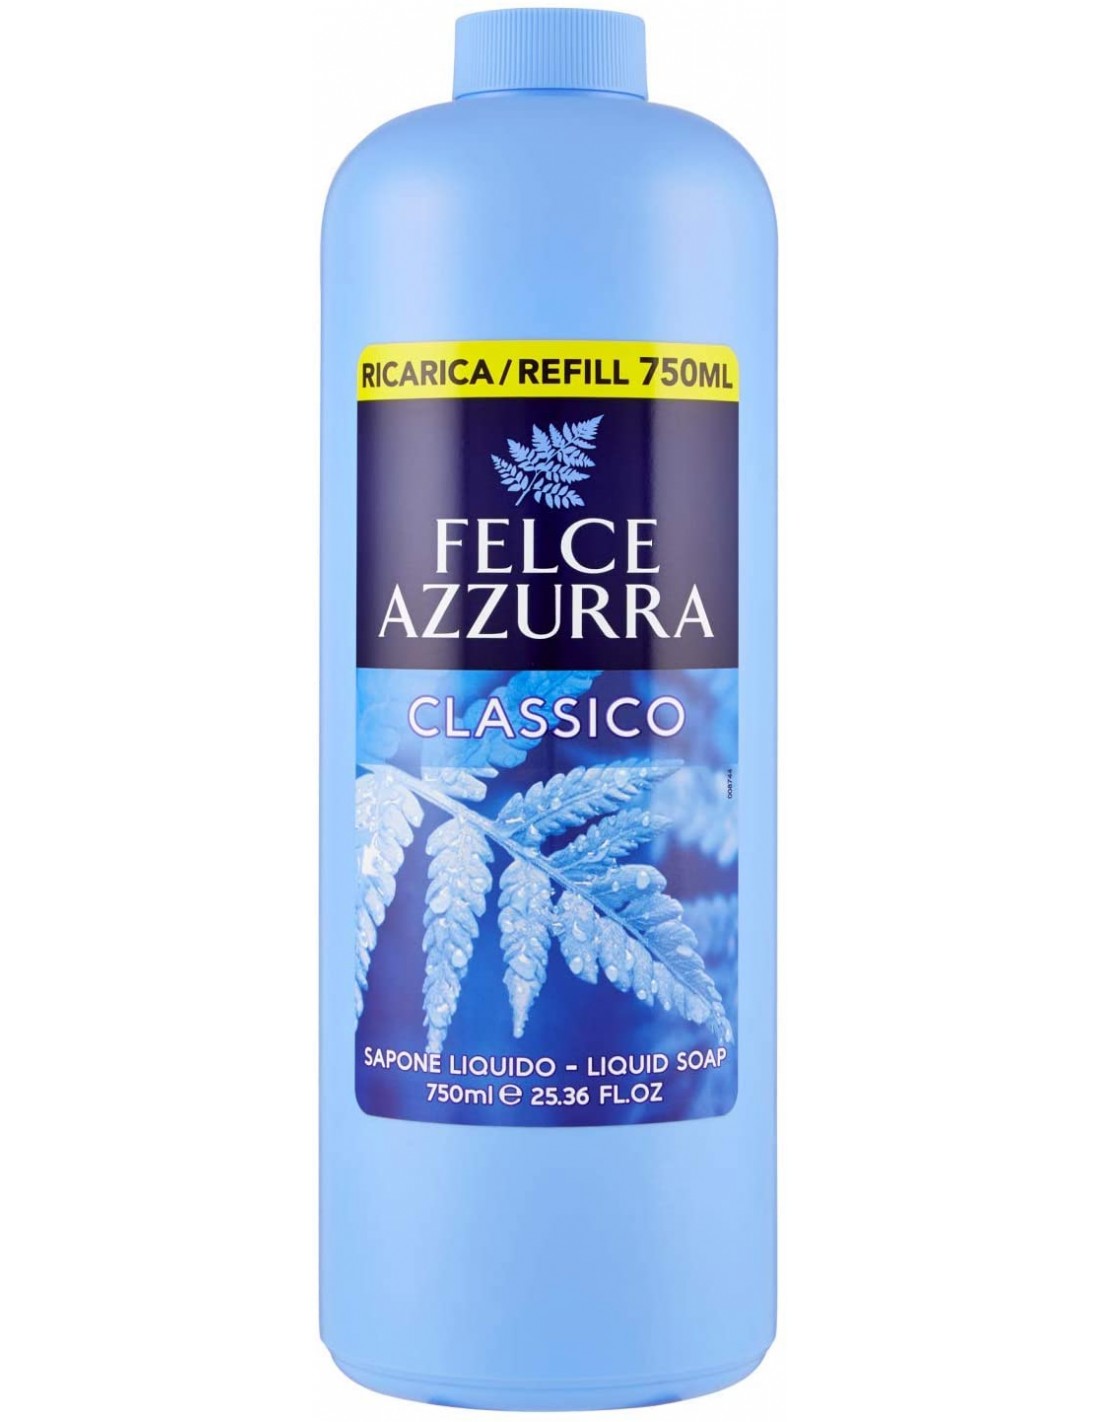 Felce Azzurra Sapone Liquido Ricarica Refill 750ml - Classico